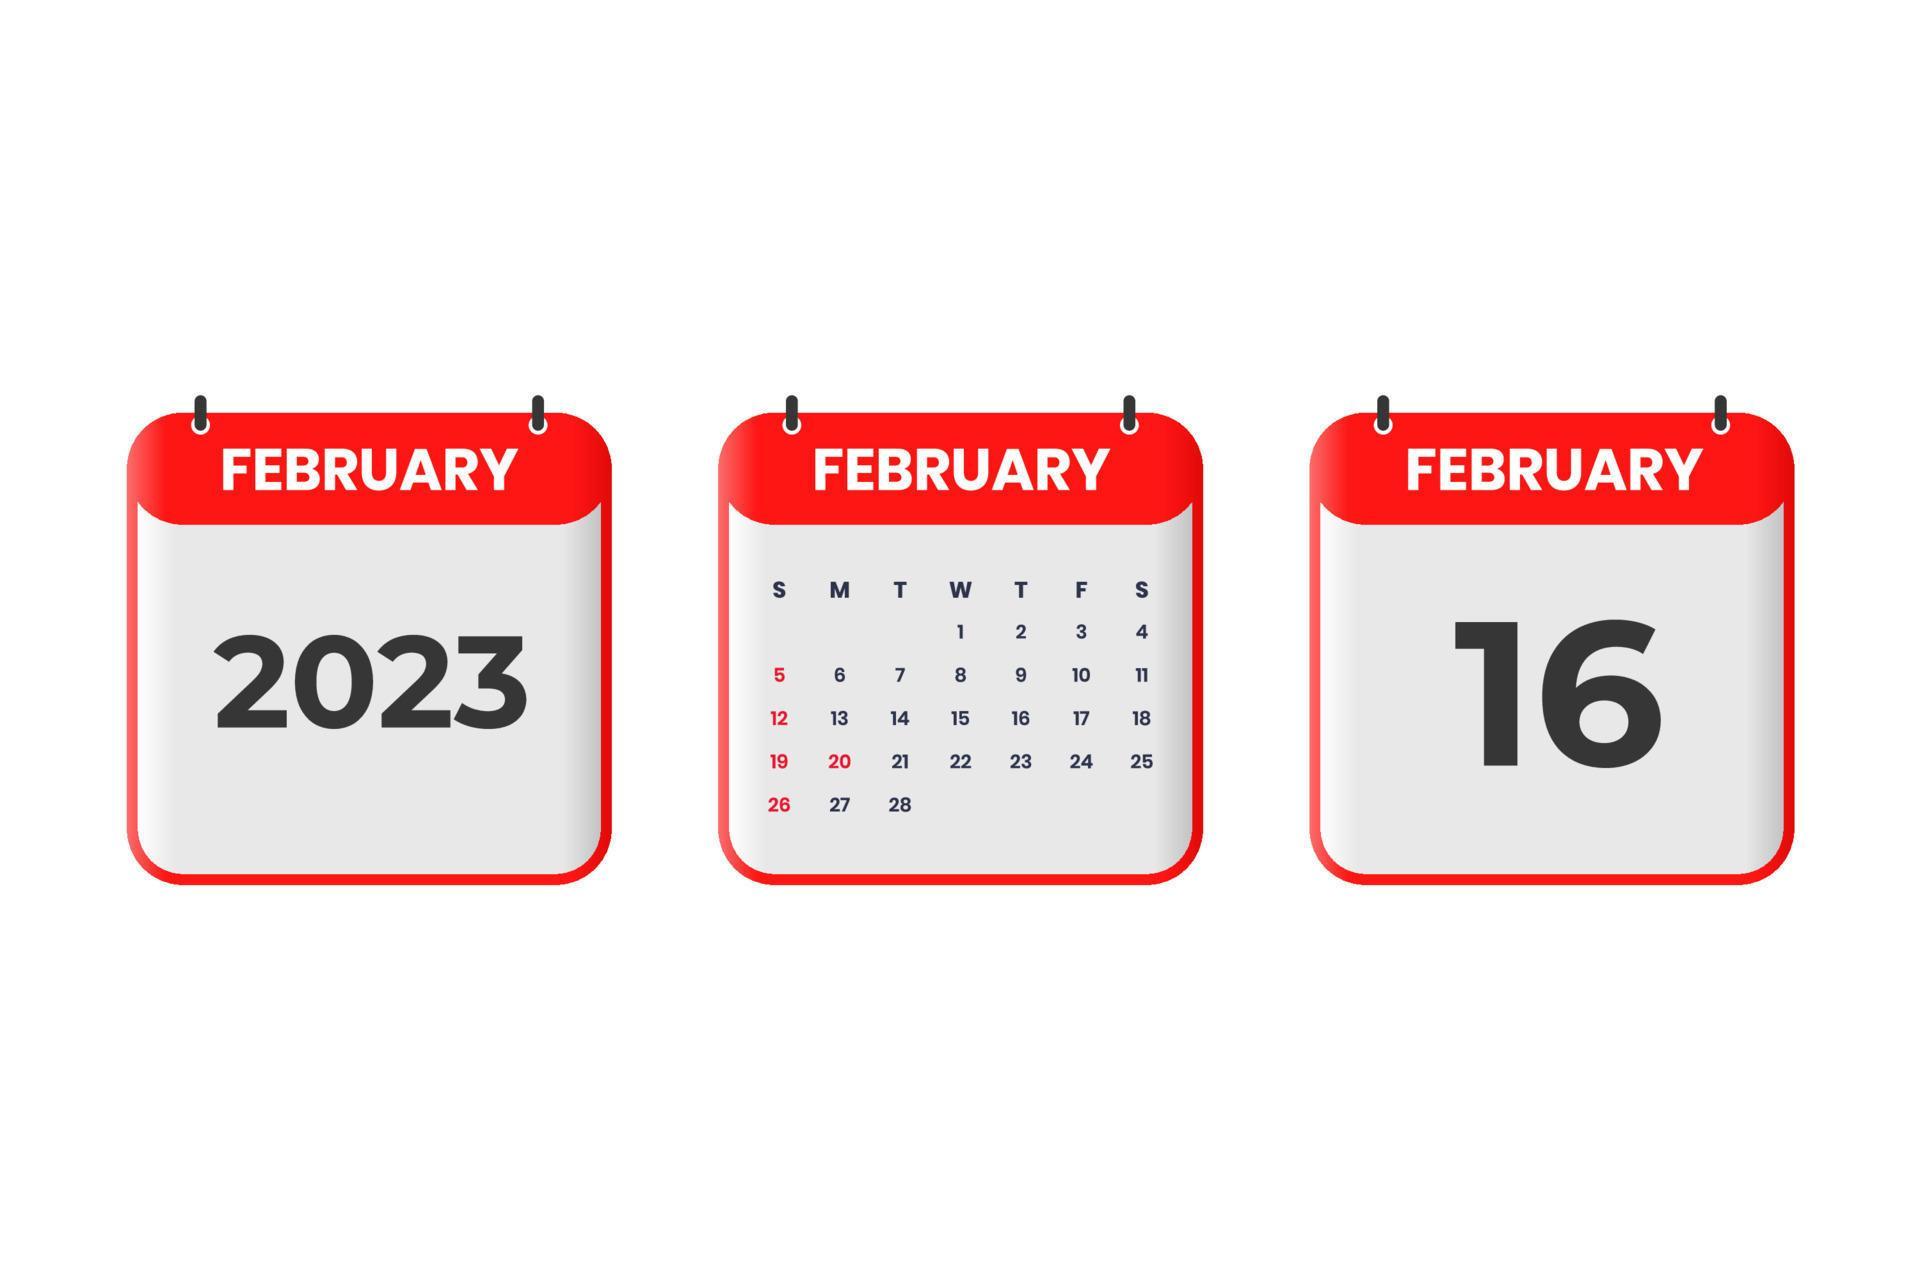 February 2023 calendar design. 16th February 2023 calendar icon for